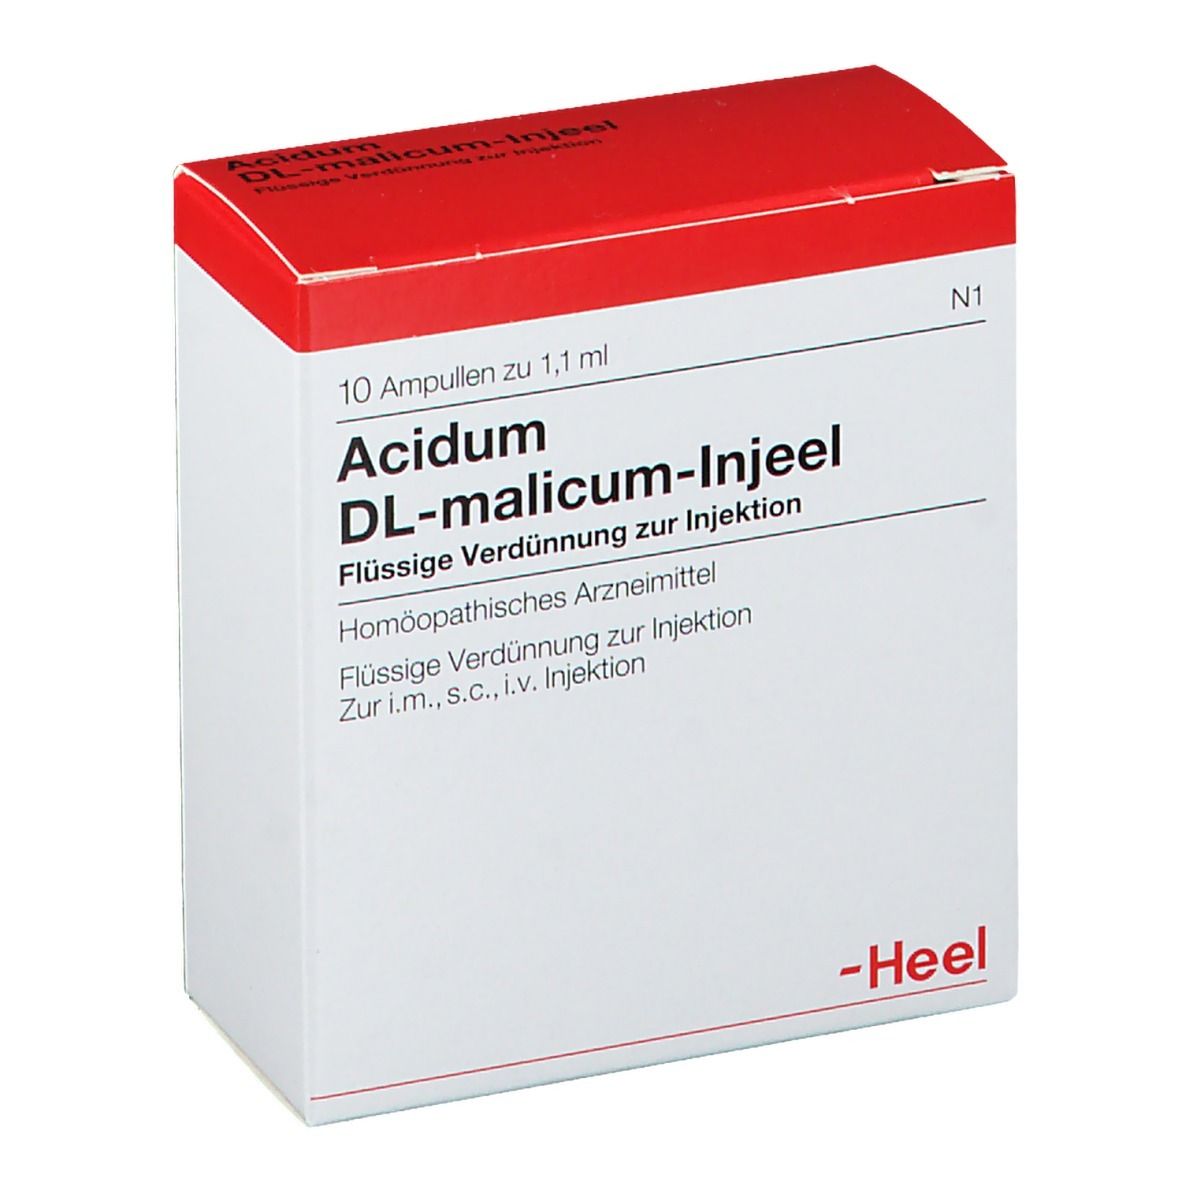 Acidum DL-malicum-Injeel® Ampullen